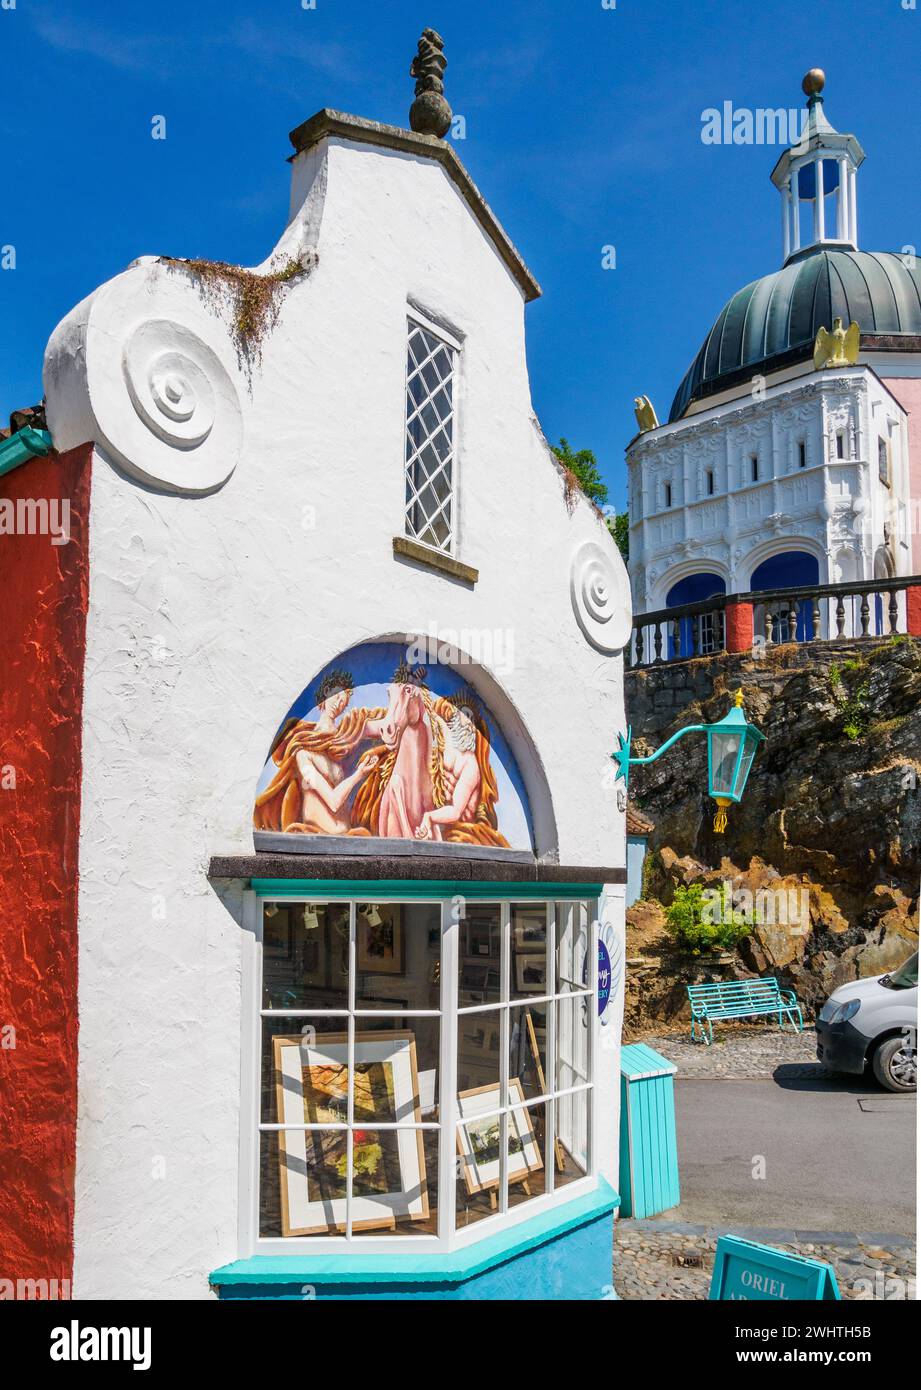 Boutique de cadeaux à Portmeirion dans le nord du pays de Galles au Royaume-Uni - village fantastique à l'italienne créé par l'architecte Sir Clough Willams-Ellis est maintenant une attraction touristique populaire Banque D'Images